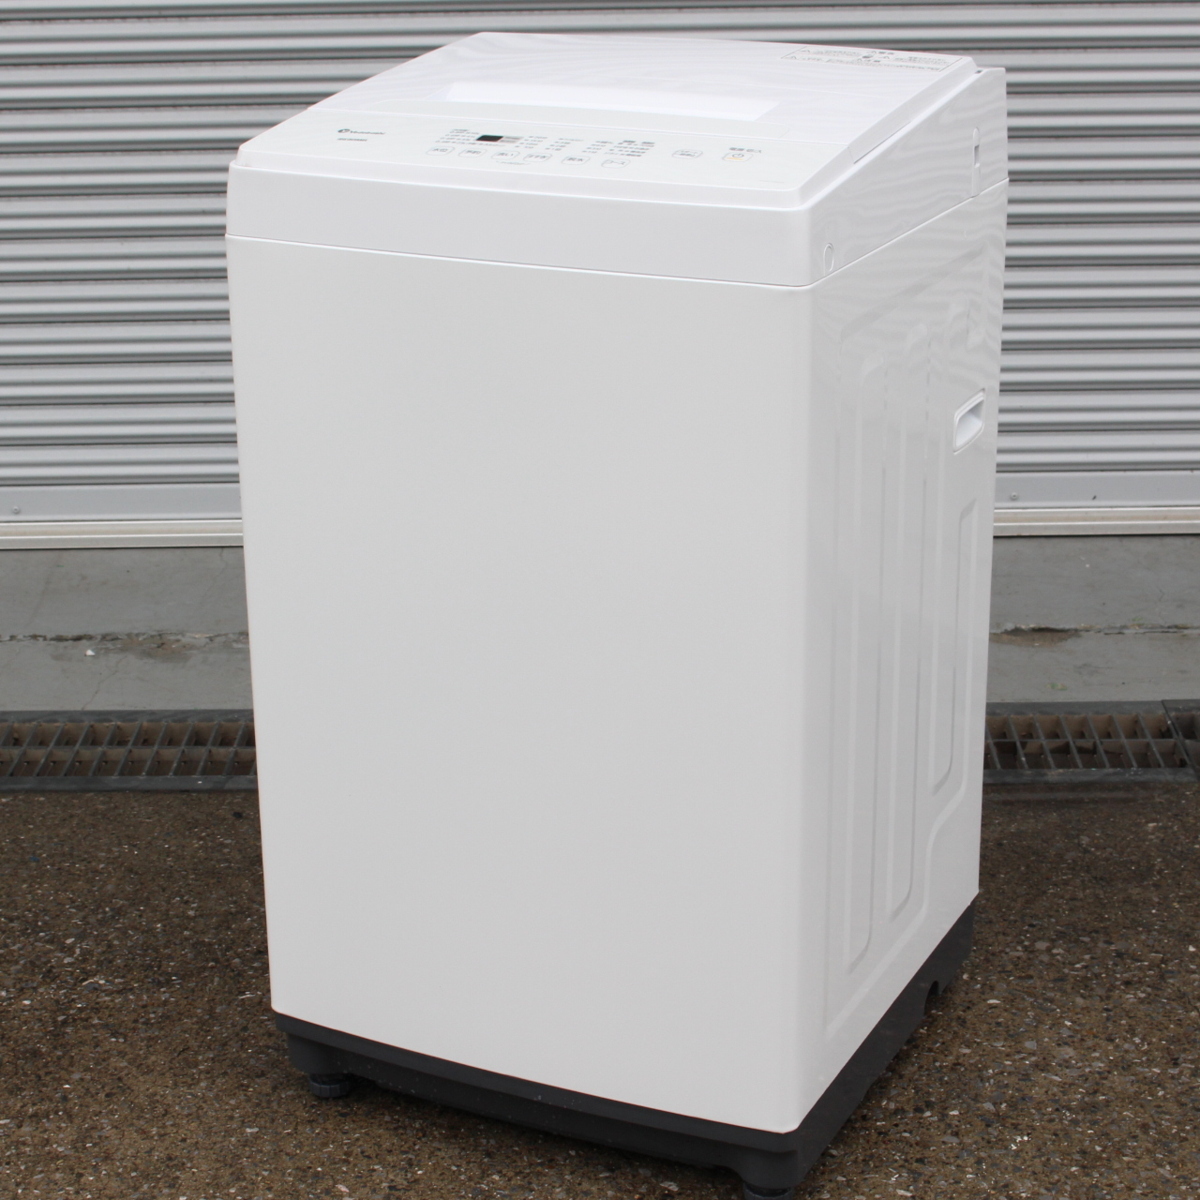 アイリスオーヤマ全自動洗濯機型番KAW-YD60A - 洗濯機